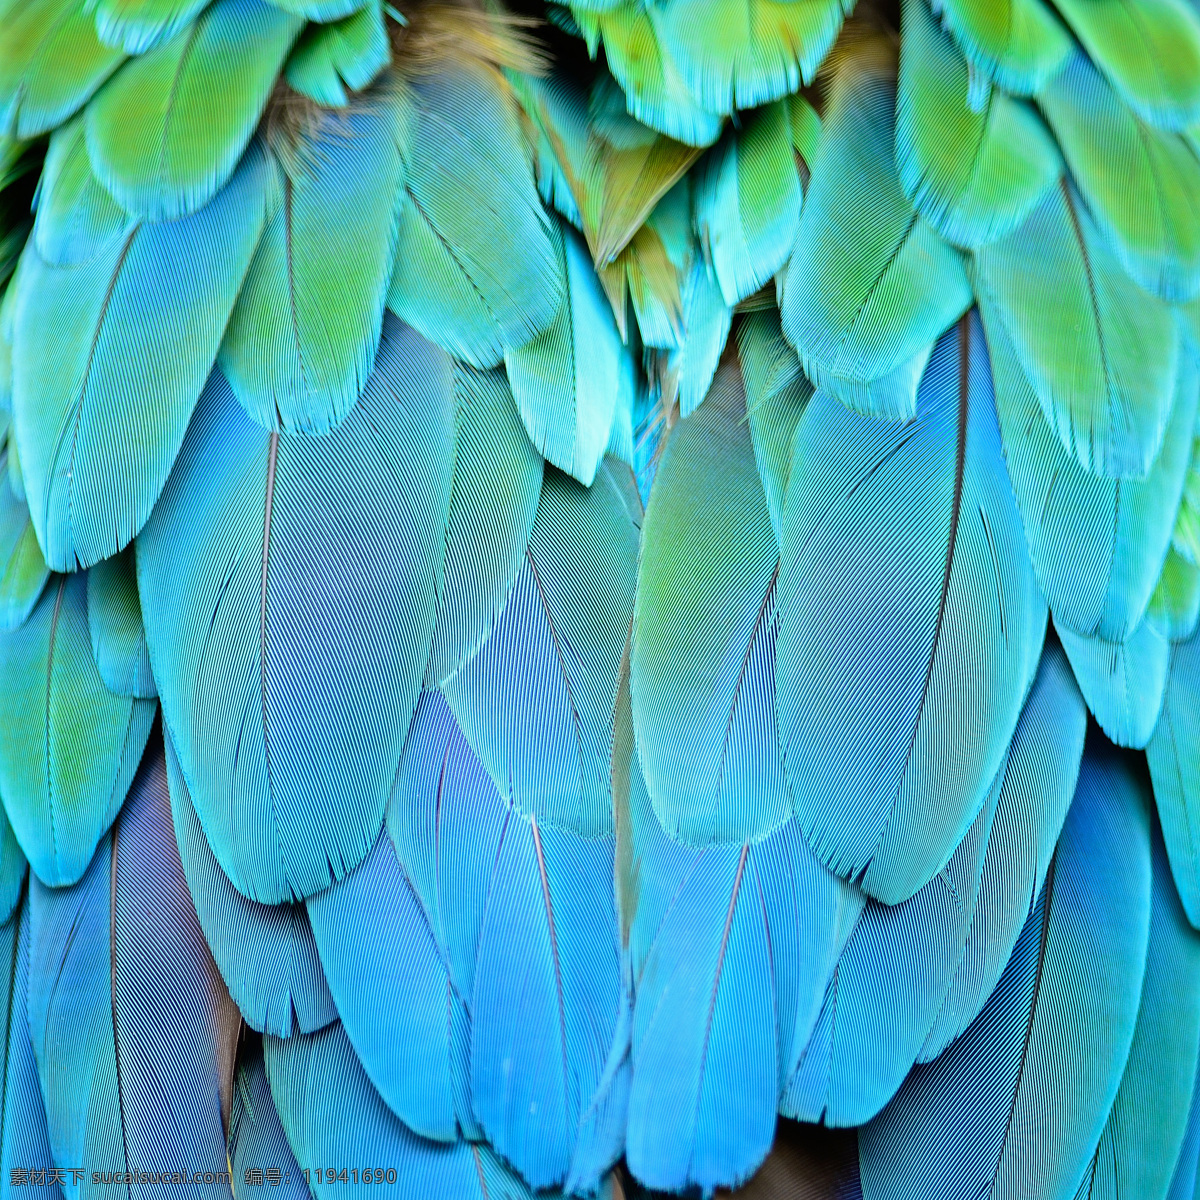 鹦鹉羽毛 鹦鹉图片 鹦鹉 彩色鹦鹉 七彩鹦鹉 巴哥 美丽鹦鹉 鹦鹉素材 鸟类 特写 生物世界